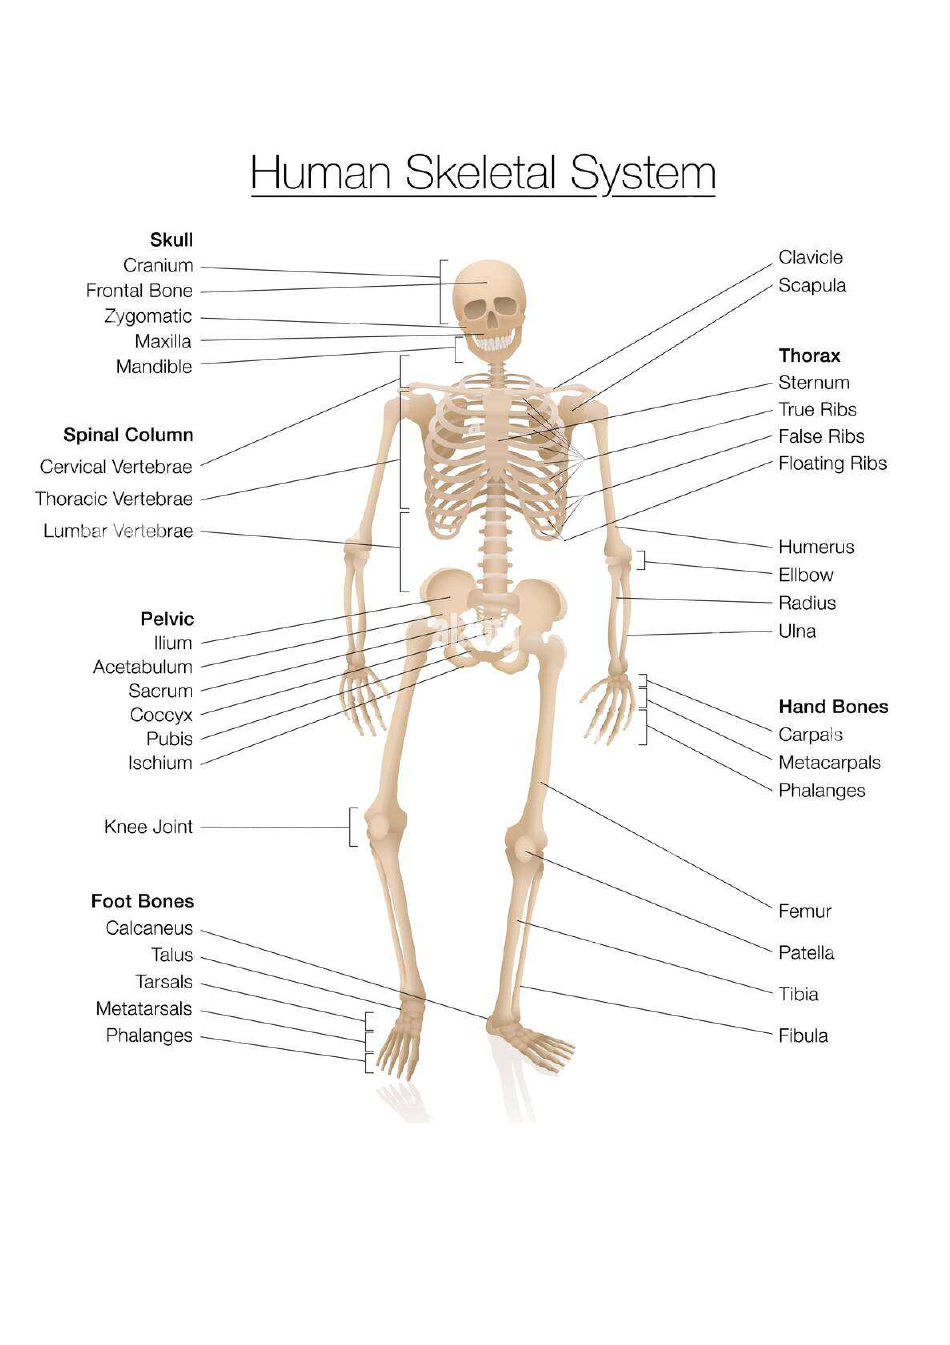 Skeleton Chart Template - Human Skeletal System